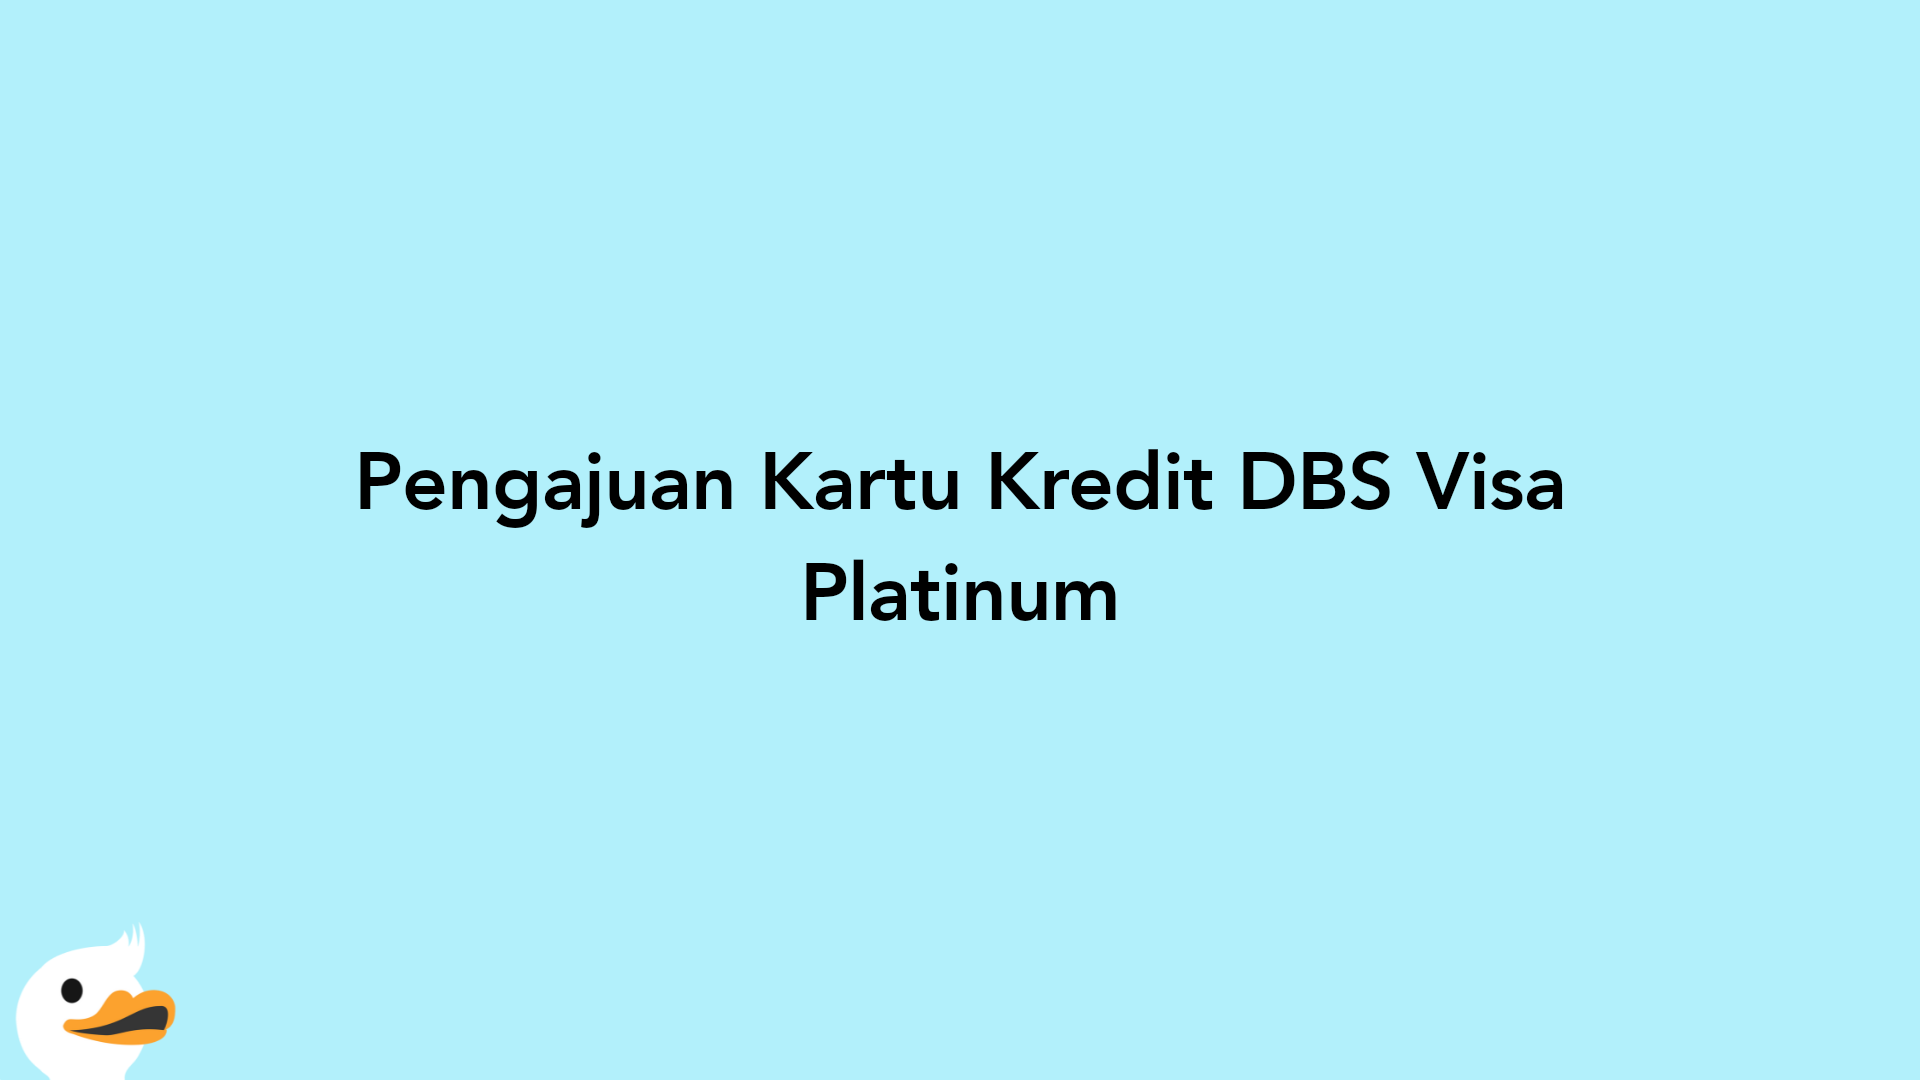 Pengajuan Kartu Kredit DBS Visa Platinum